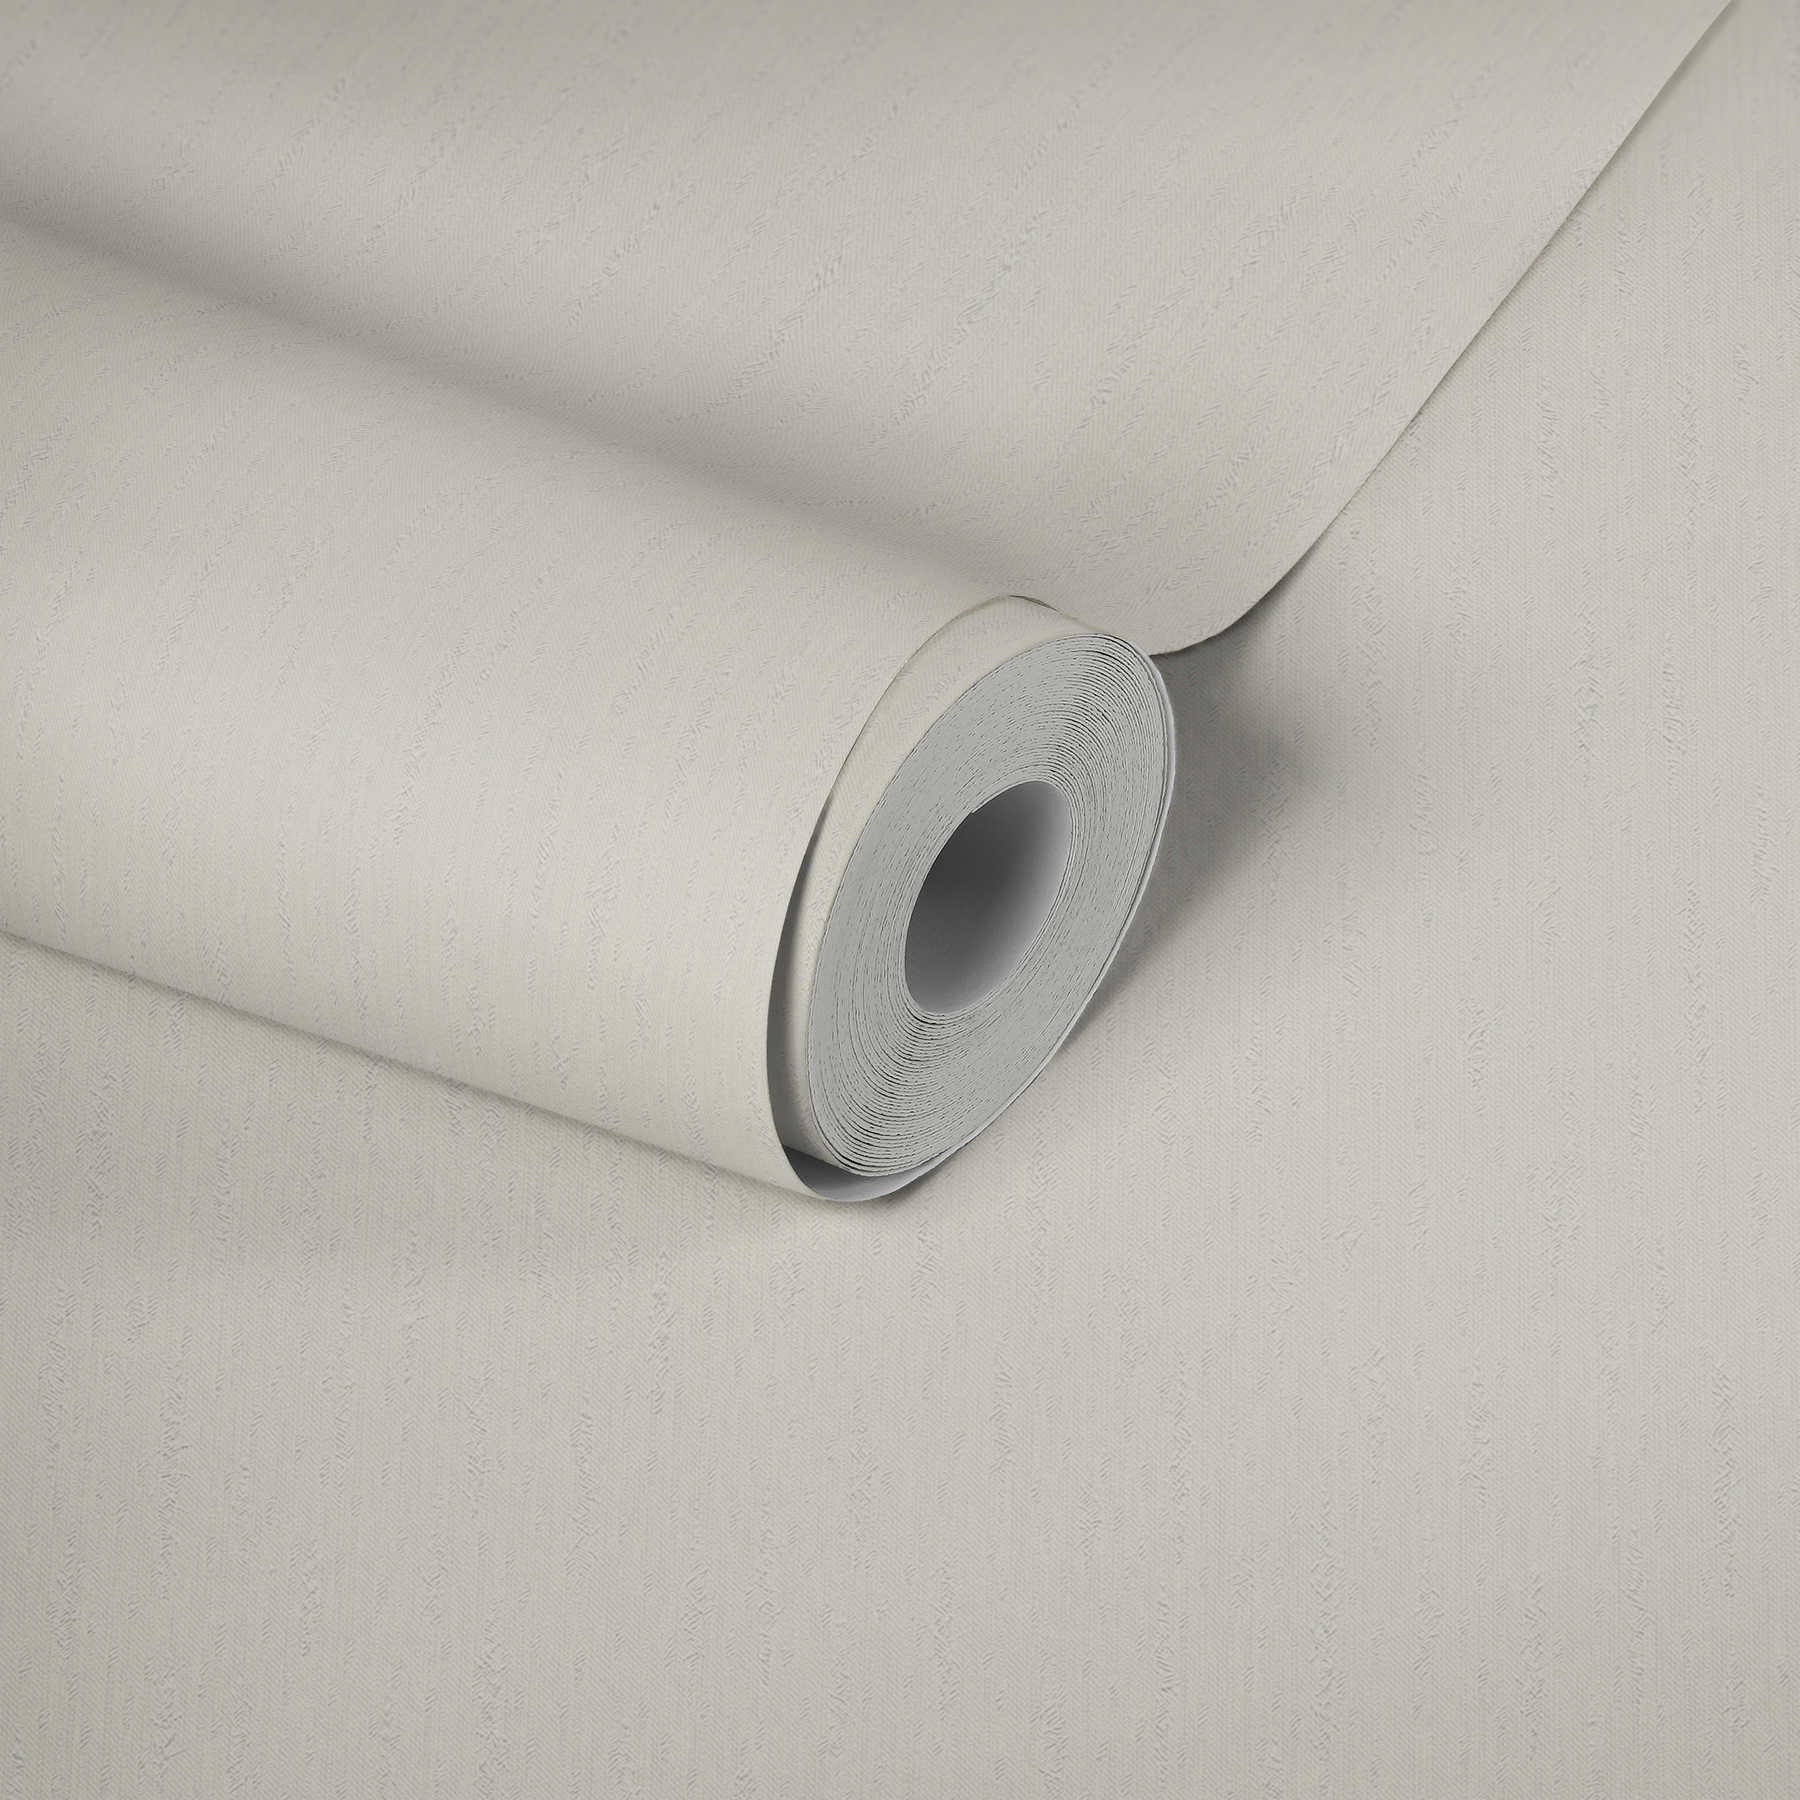             Plain non-woven wallpaper with texture design - metallic, white
        